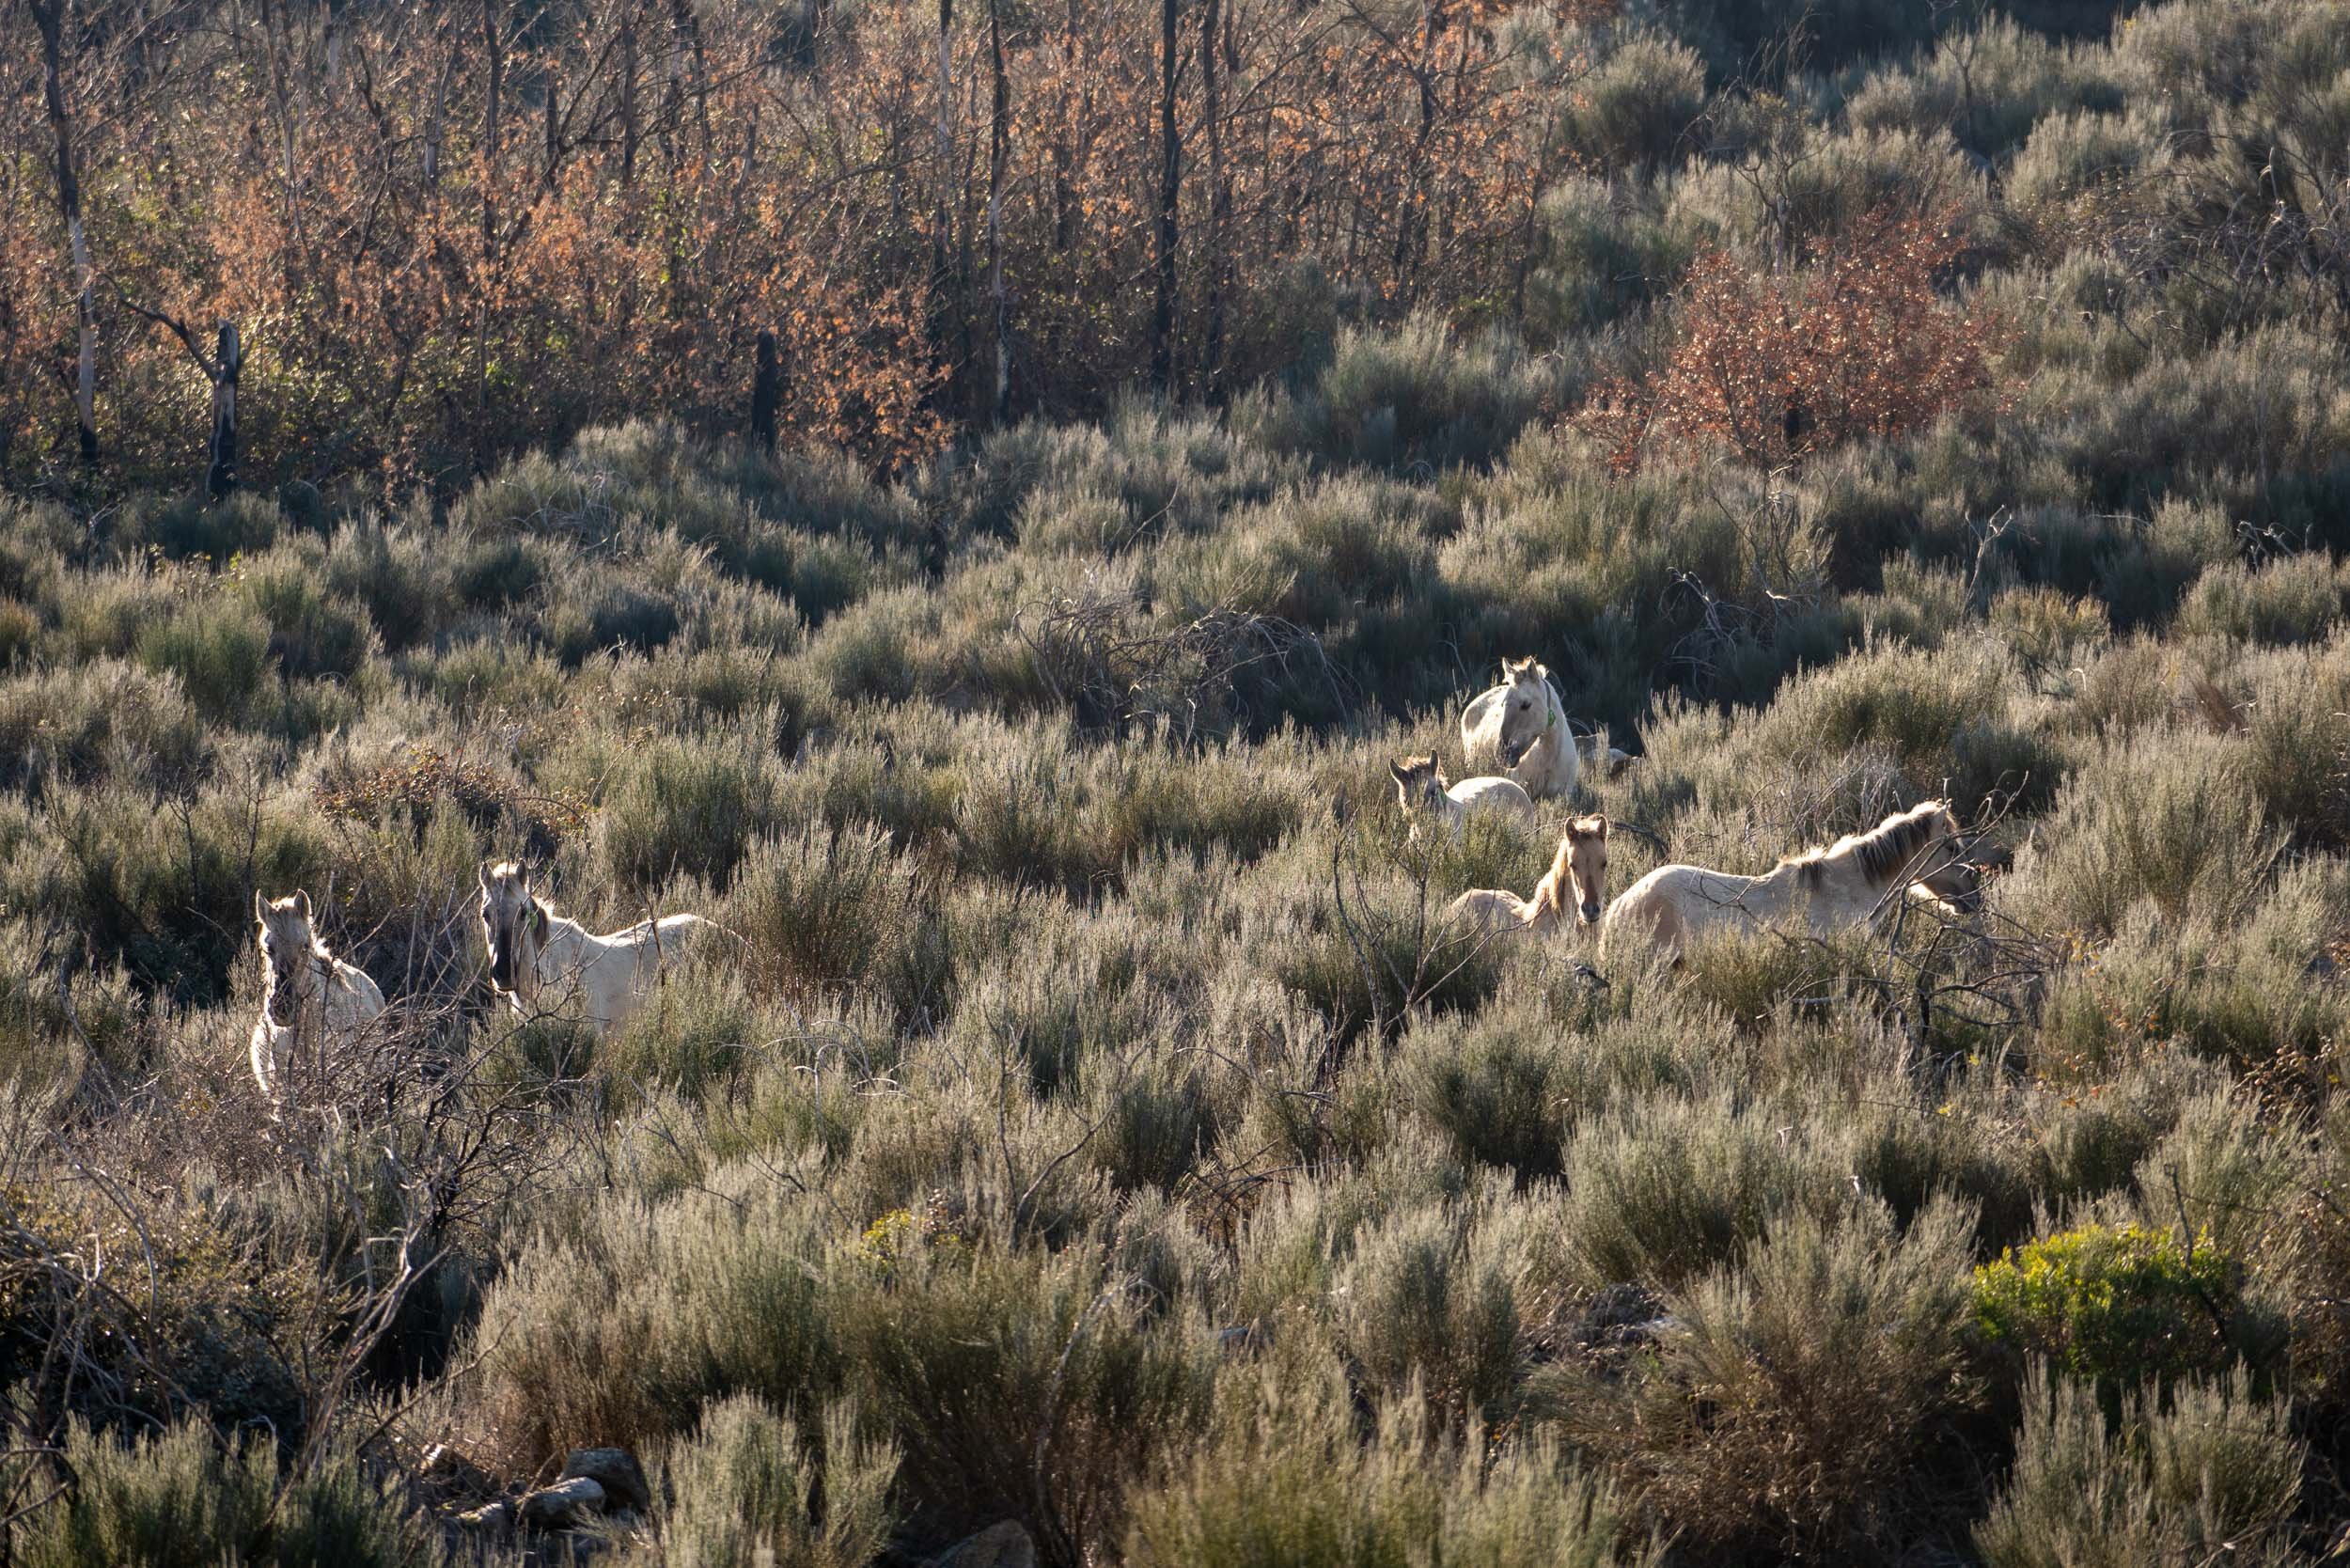 Wild Sorraia horses in the Coa Vally.